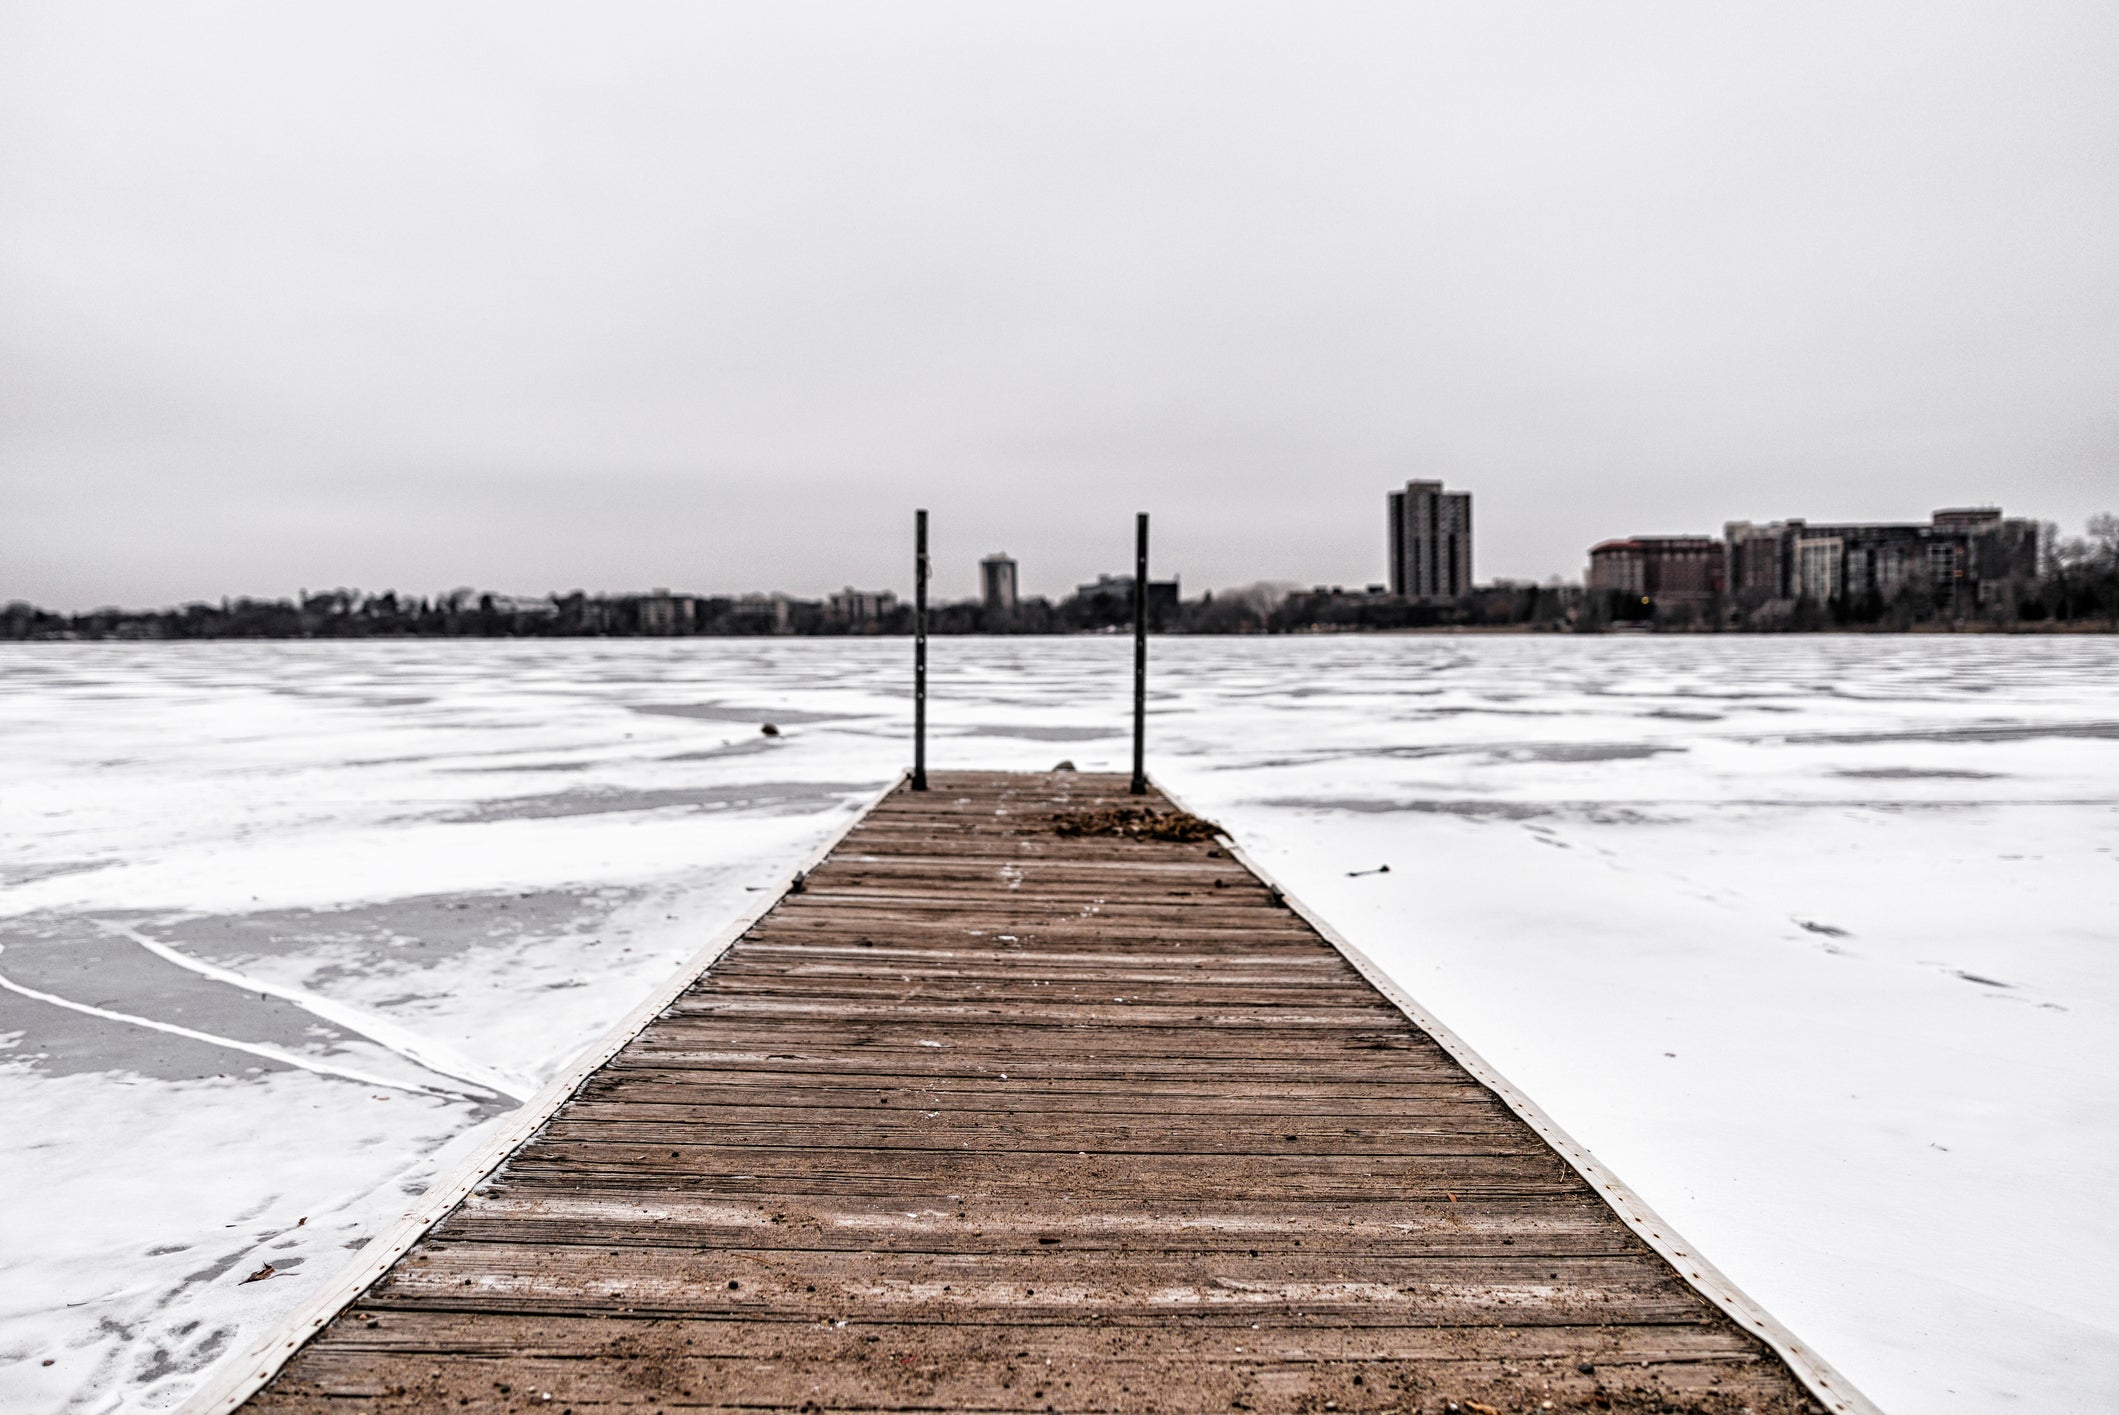 Winter on the Frozen Lakes, Minnesota (iStock)